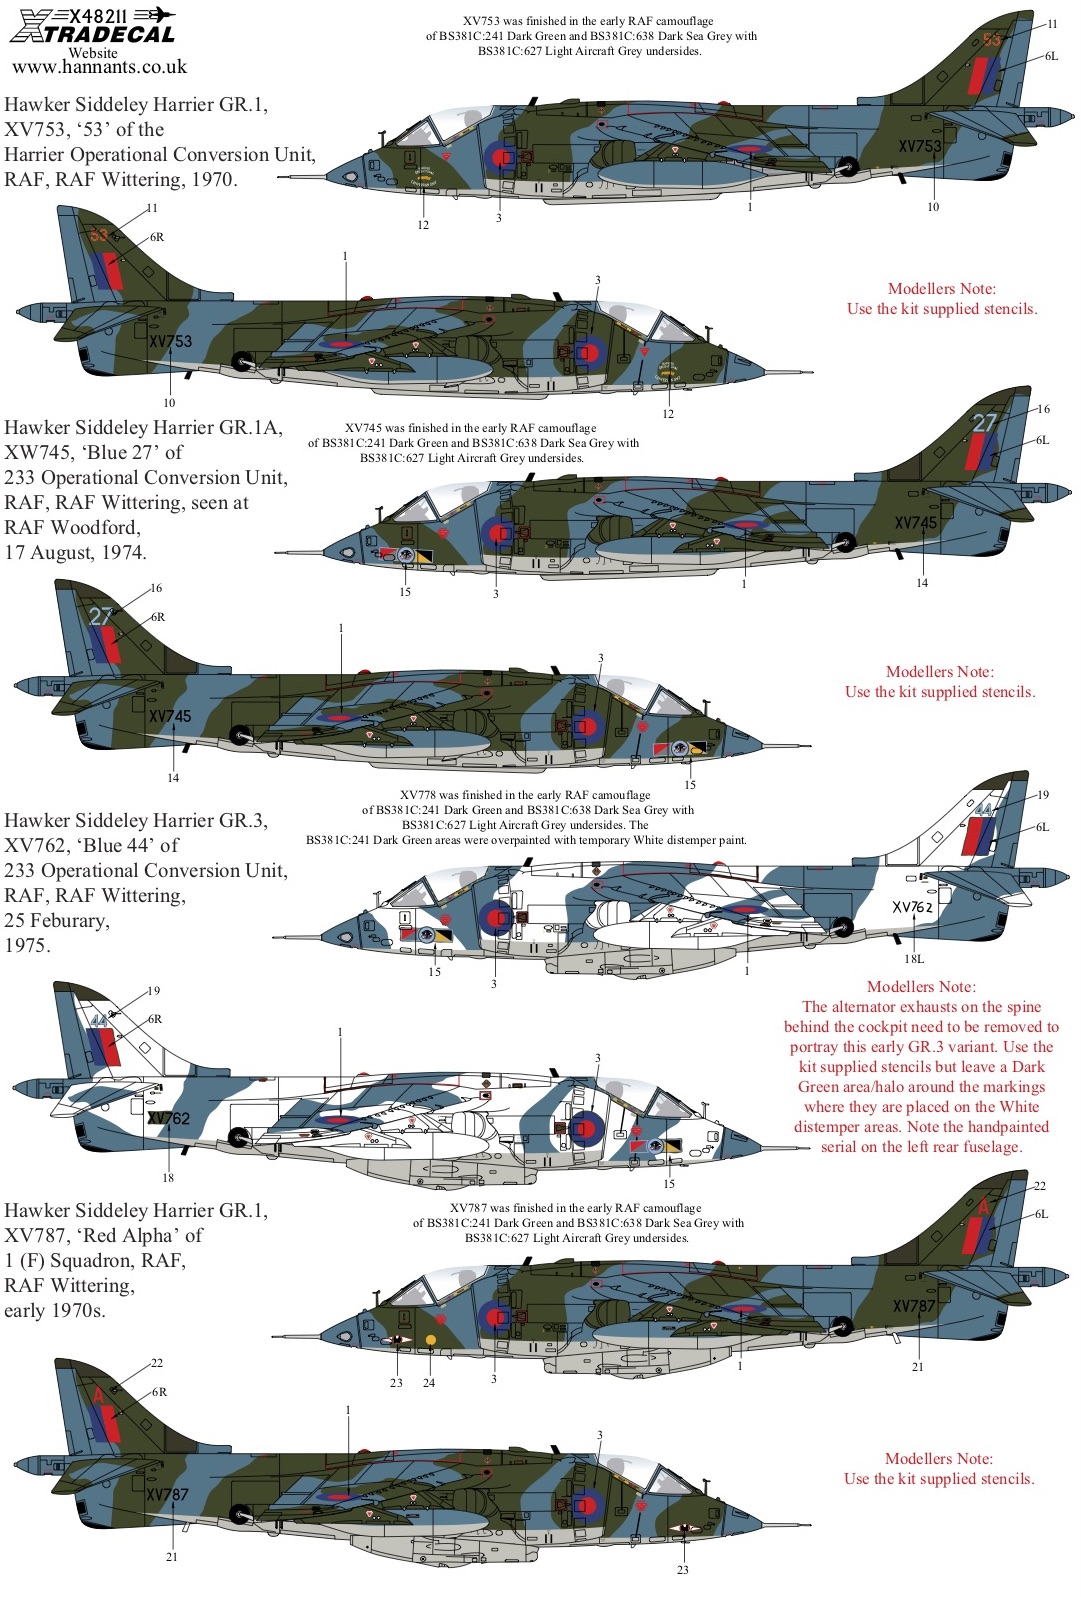 1/48　Early RAF Harrier GR.1/3s (8) Hawker-Siddeley Harrier